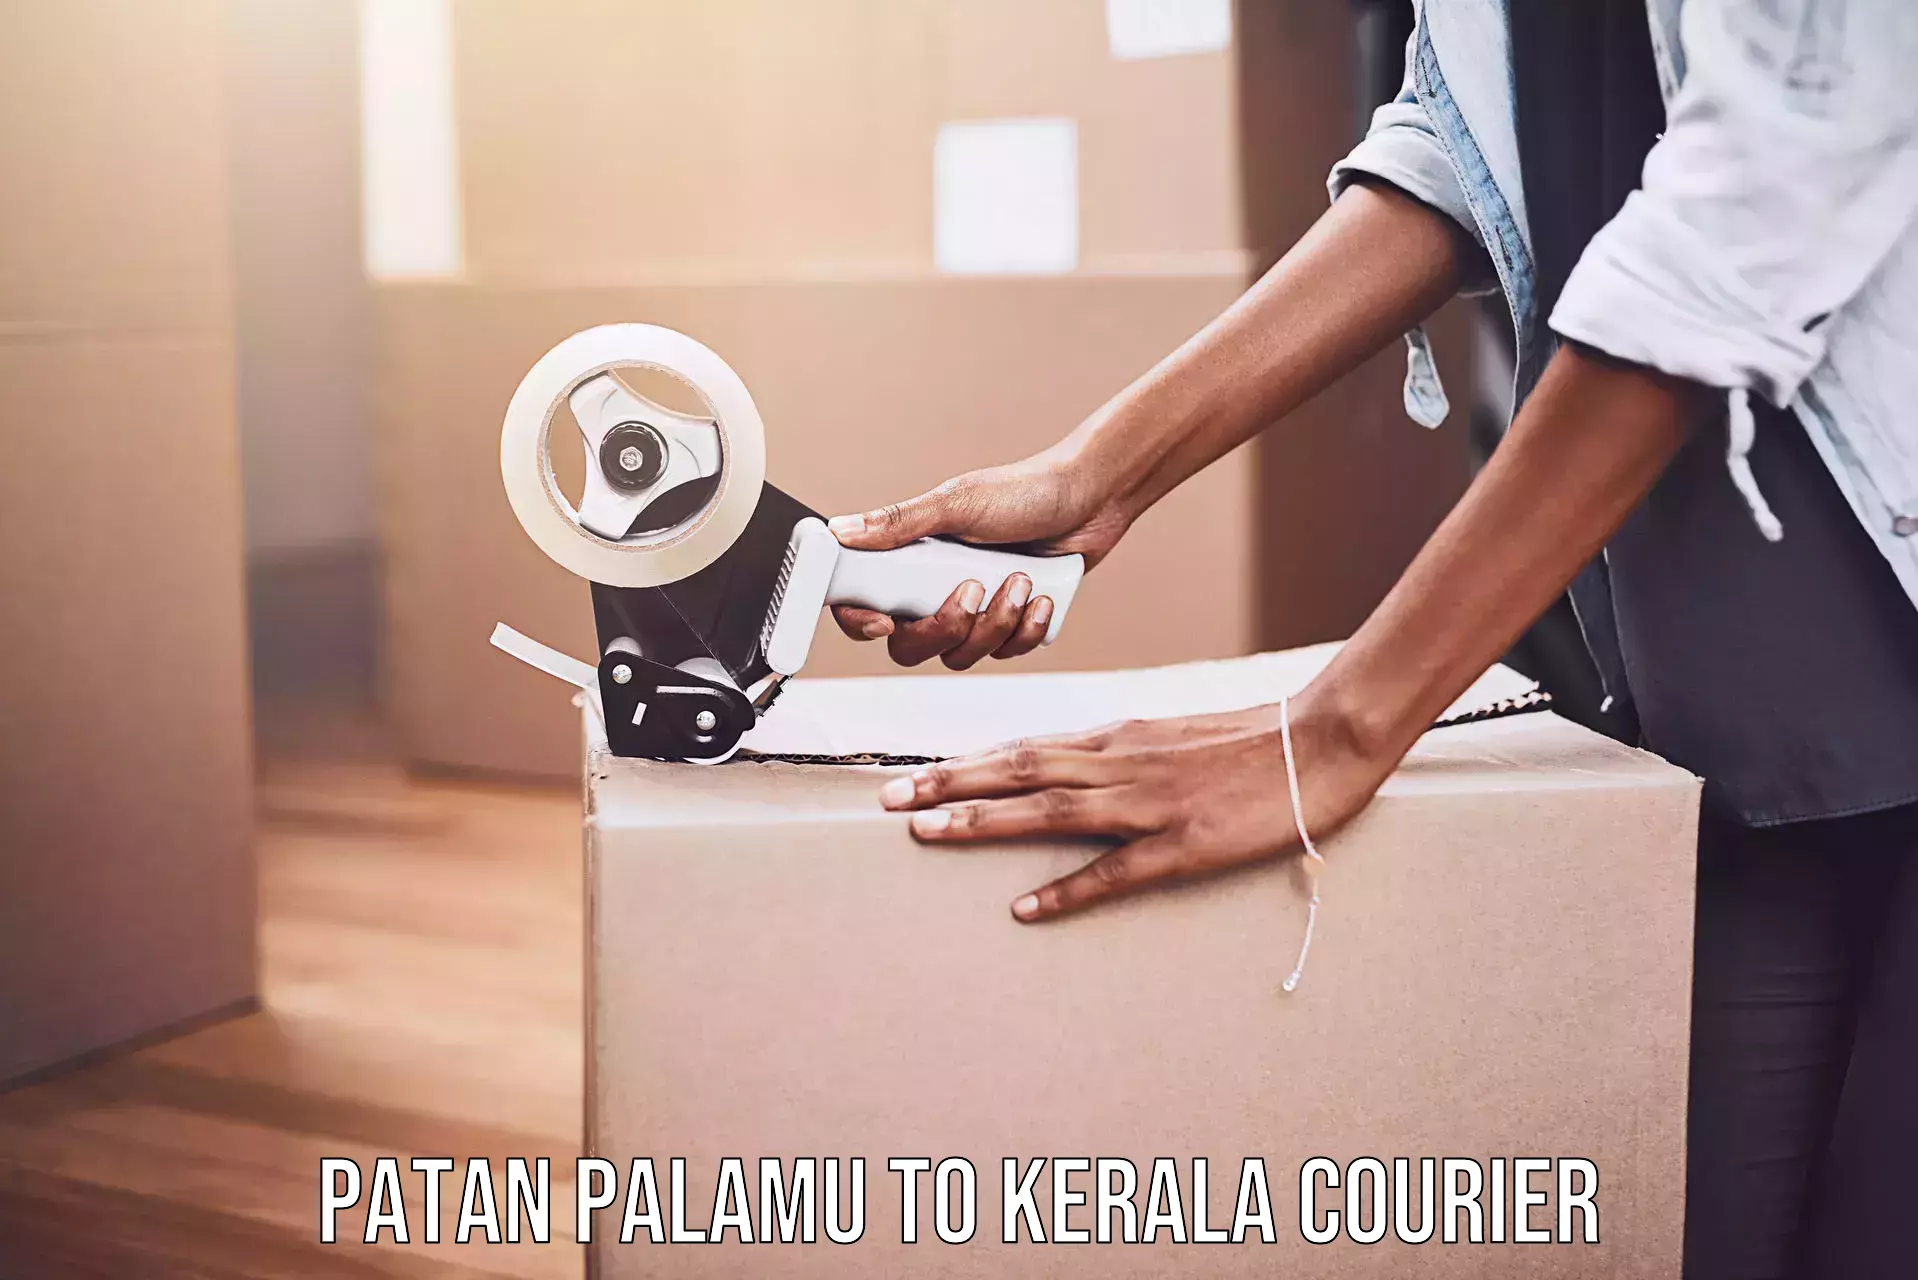 High-capacity parcel service Patan Palamu to Pala